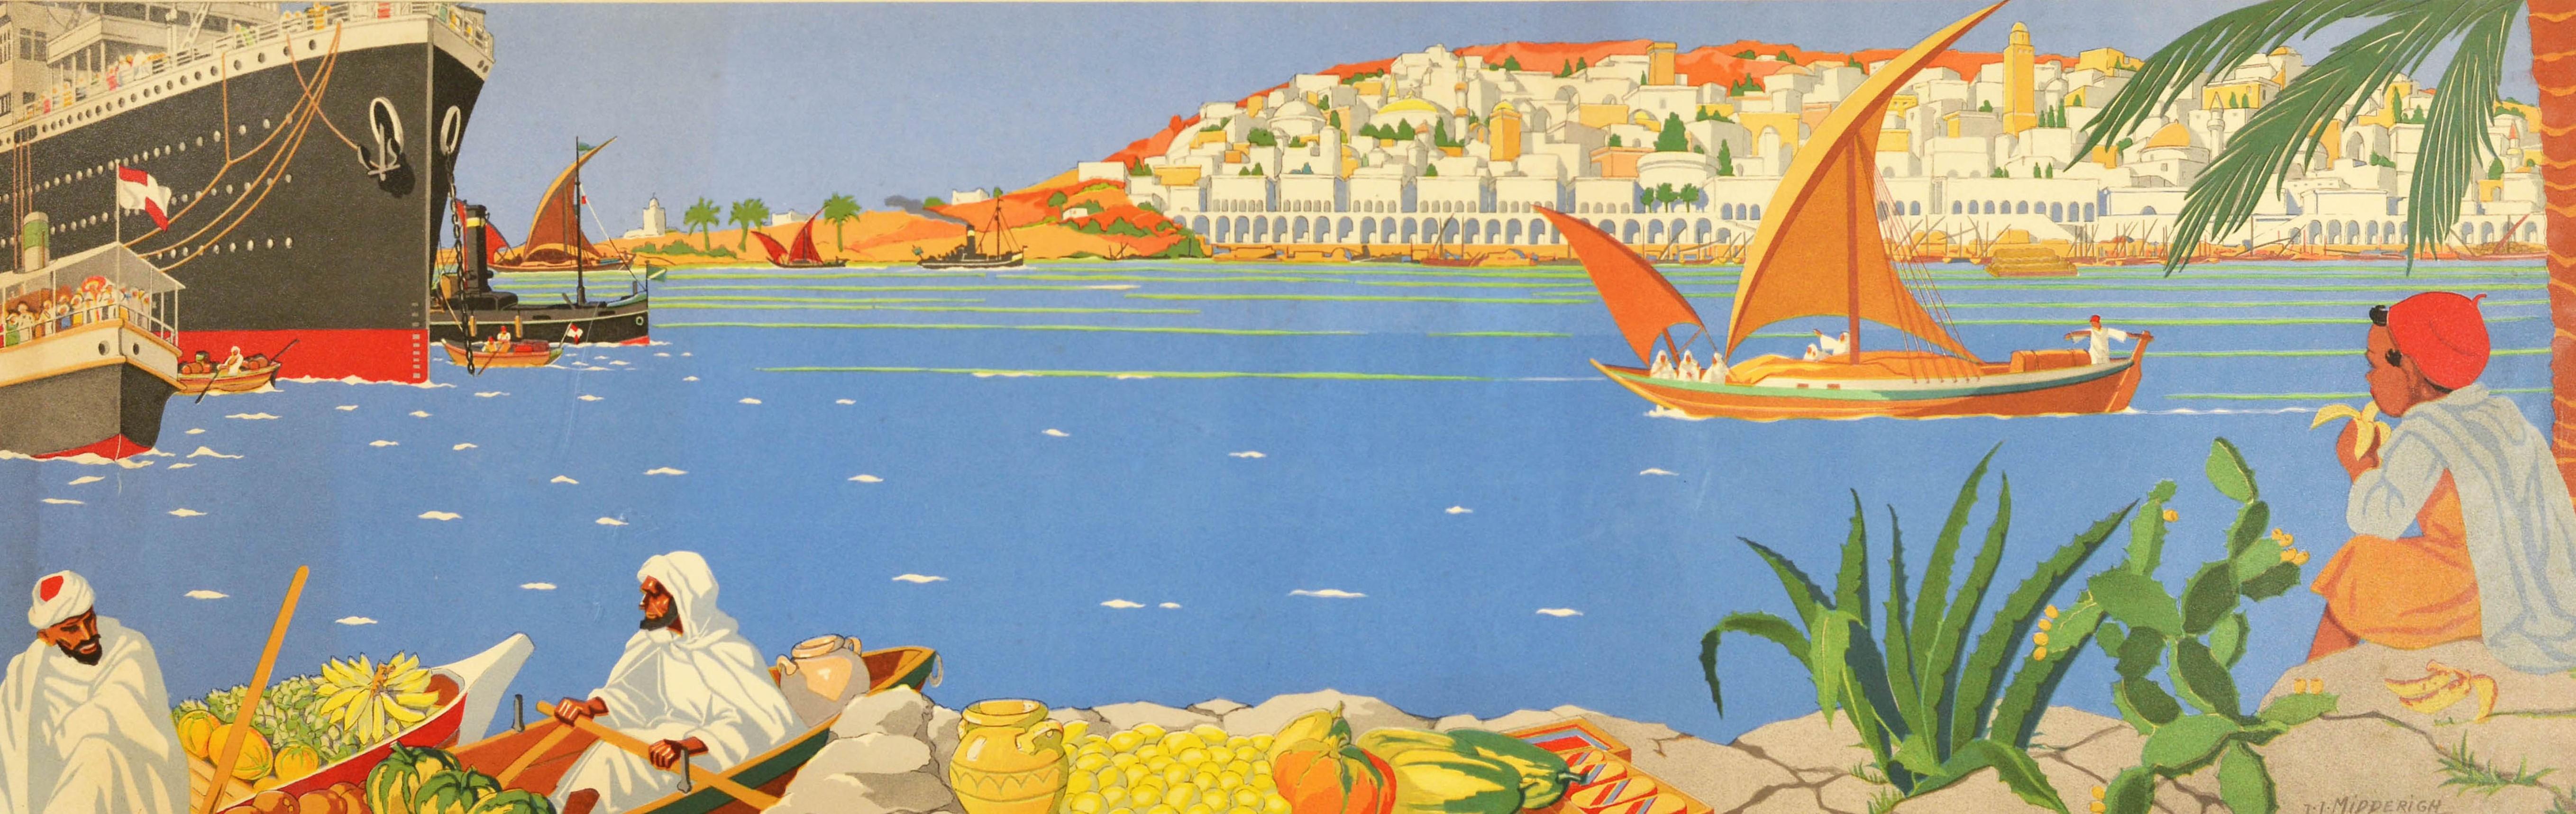 Original-Reiseplakat mit einem farbenfrohen, von Jean Jacques Midderigh (1877-1970) gemalten Landschaftsbild mit dem Titel In The Near East (Im Nahen Osten). Es zeigt Männer in Ruderbooten, die mit tropischen Früchten beladen sind, und einen Jungen,